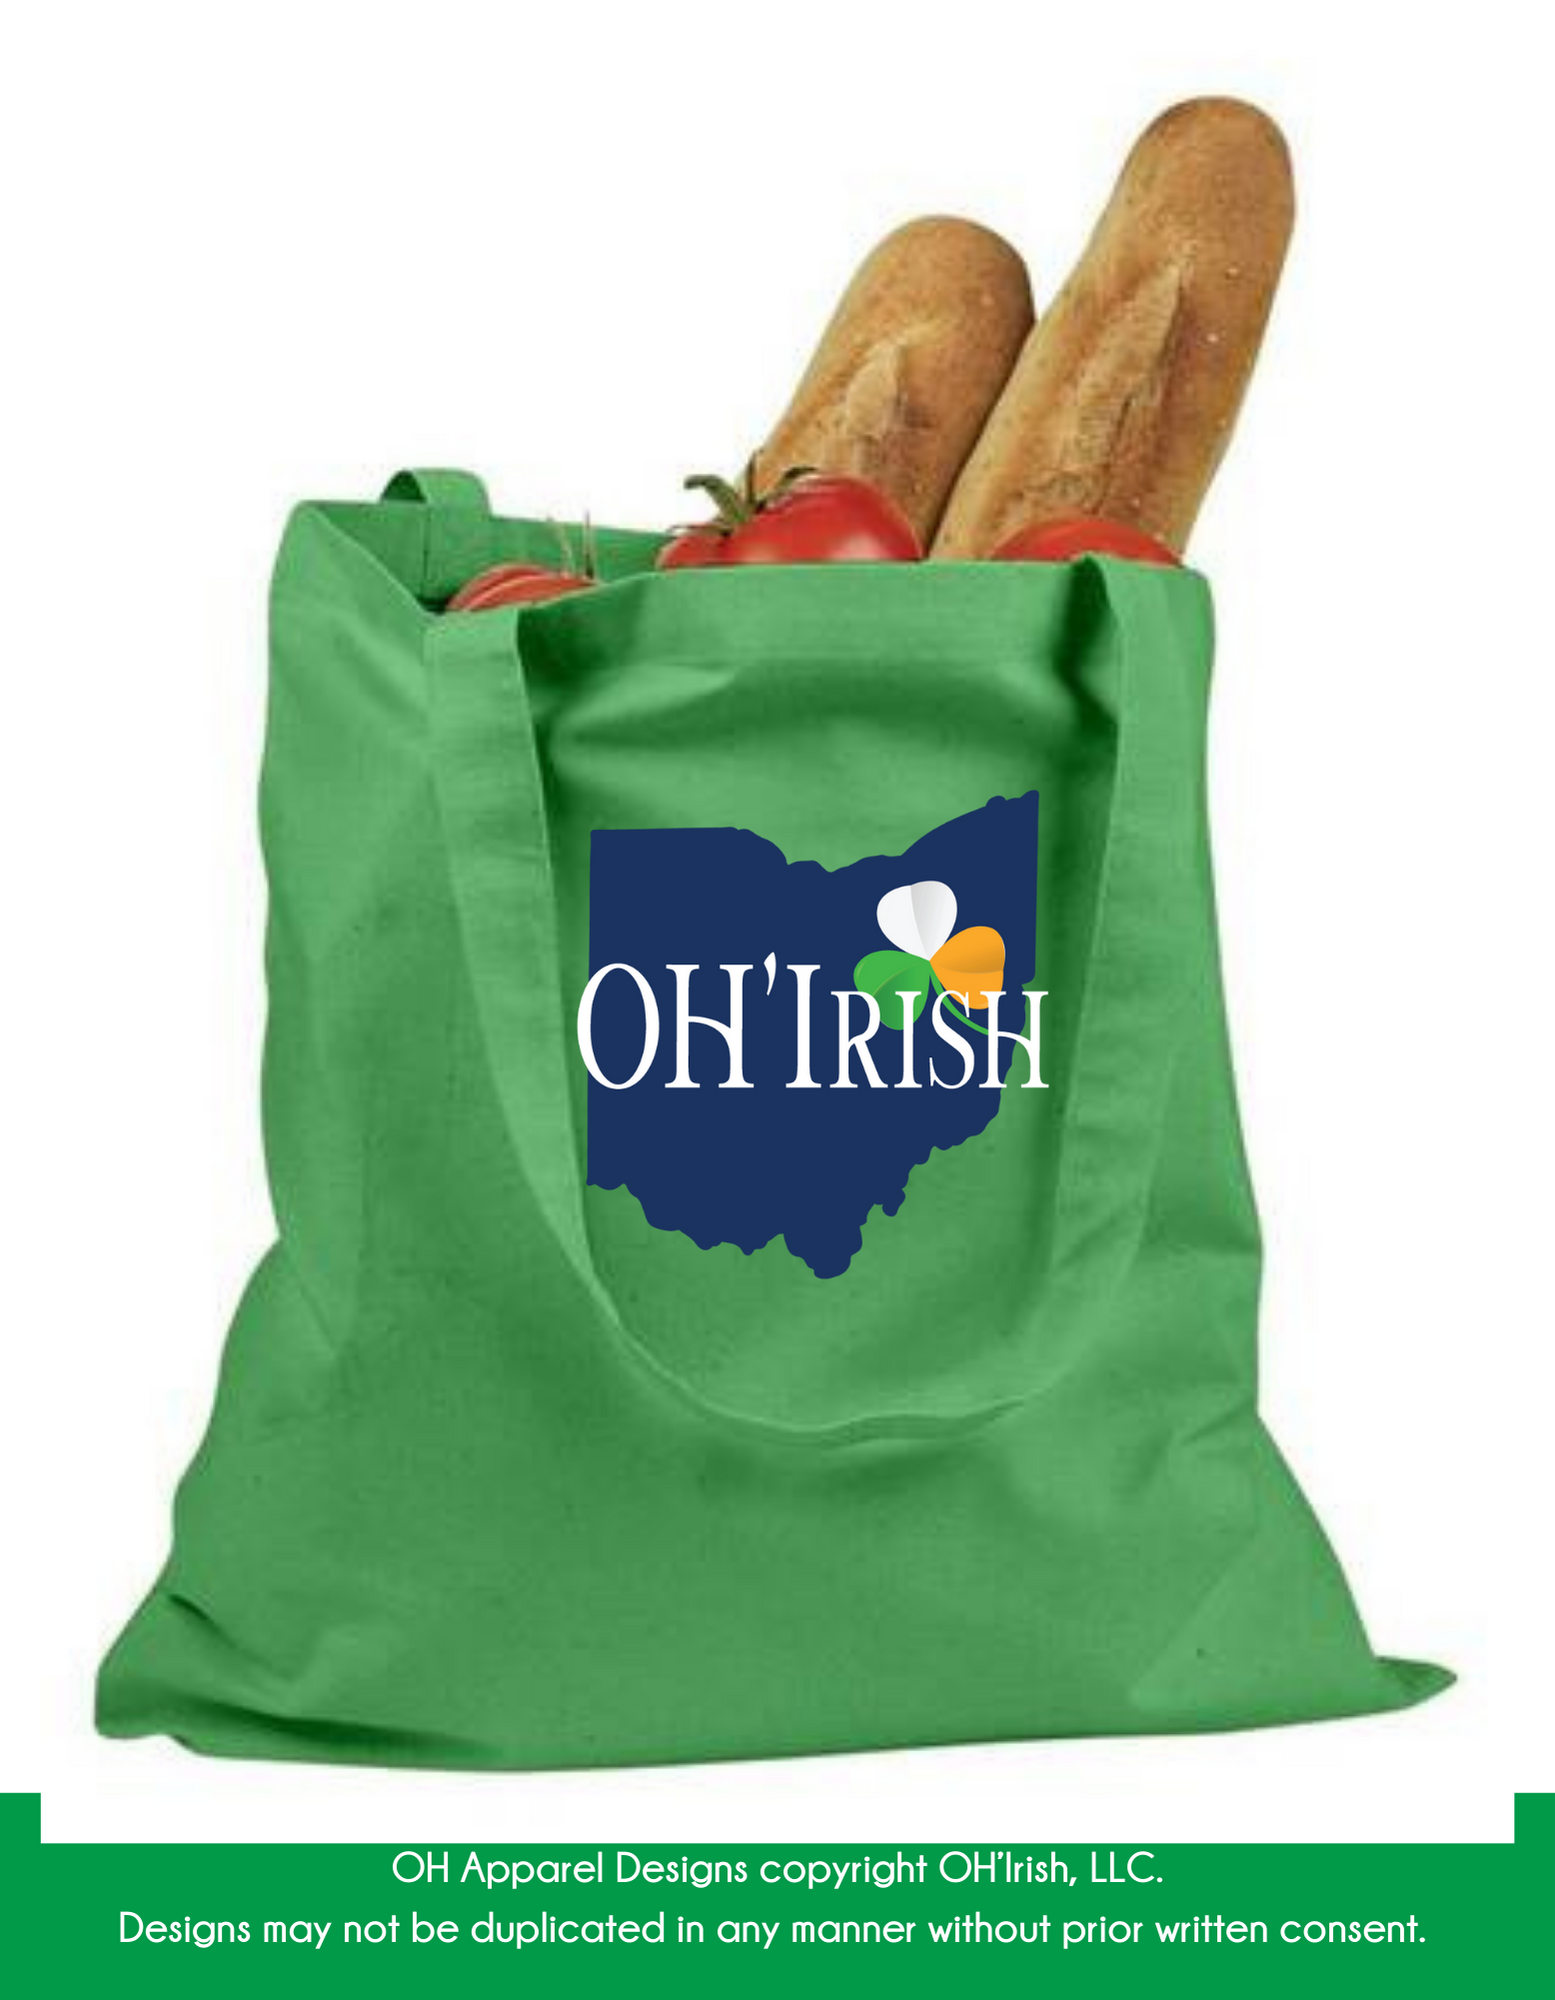 oh-irish-tote-bag.png